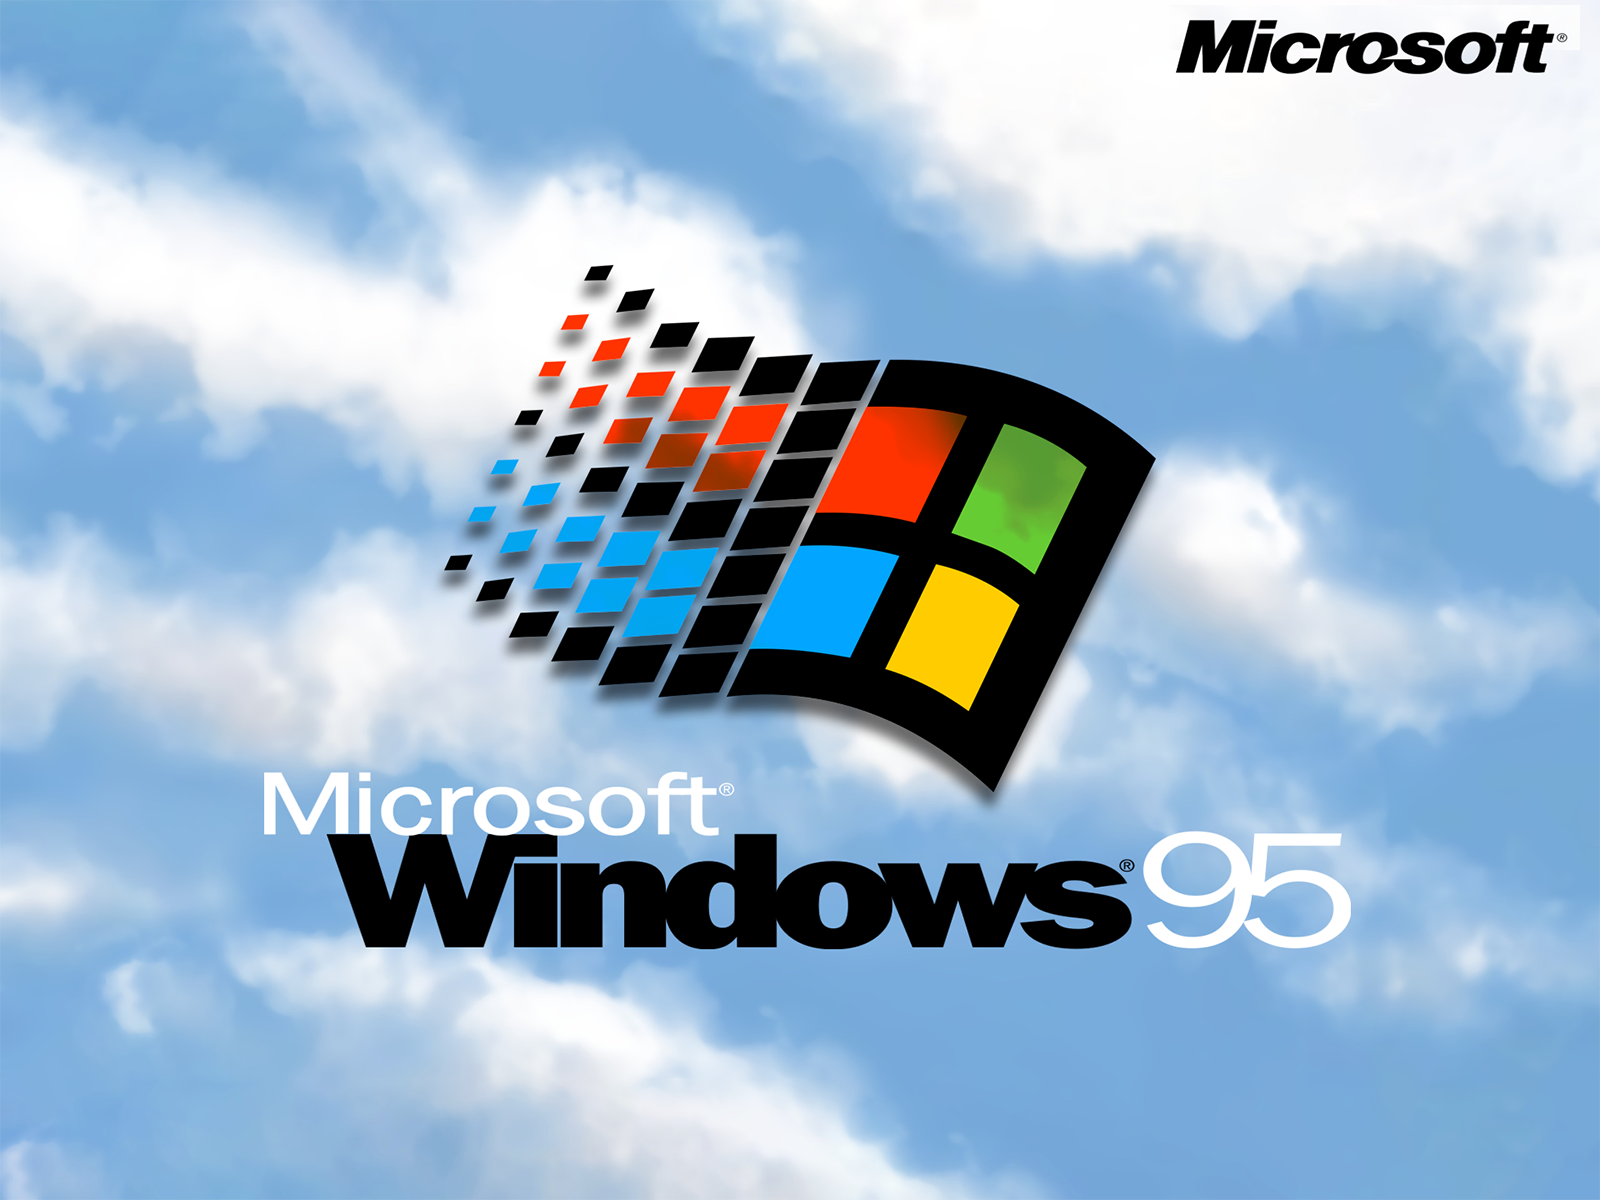 Windows 95 Remake - Windows 95 đã quá cũ và lỗi thời, nhưng có những người vẫn yêu thích nó. Bạn sẽ bất ngờ khi xem Windows 95 Remake, một phiên bản độc đáo phù hợp với thời đại hiện đại. Bạn sẽ được trở lại với một thời điểm vô cùng đặc biệt và cùng trải nghiệm lại chiếc máy tính đầu tiên của mình.